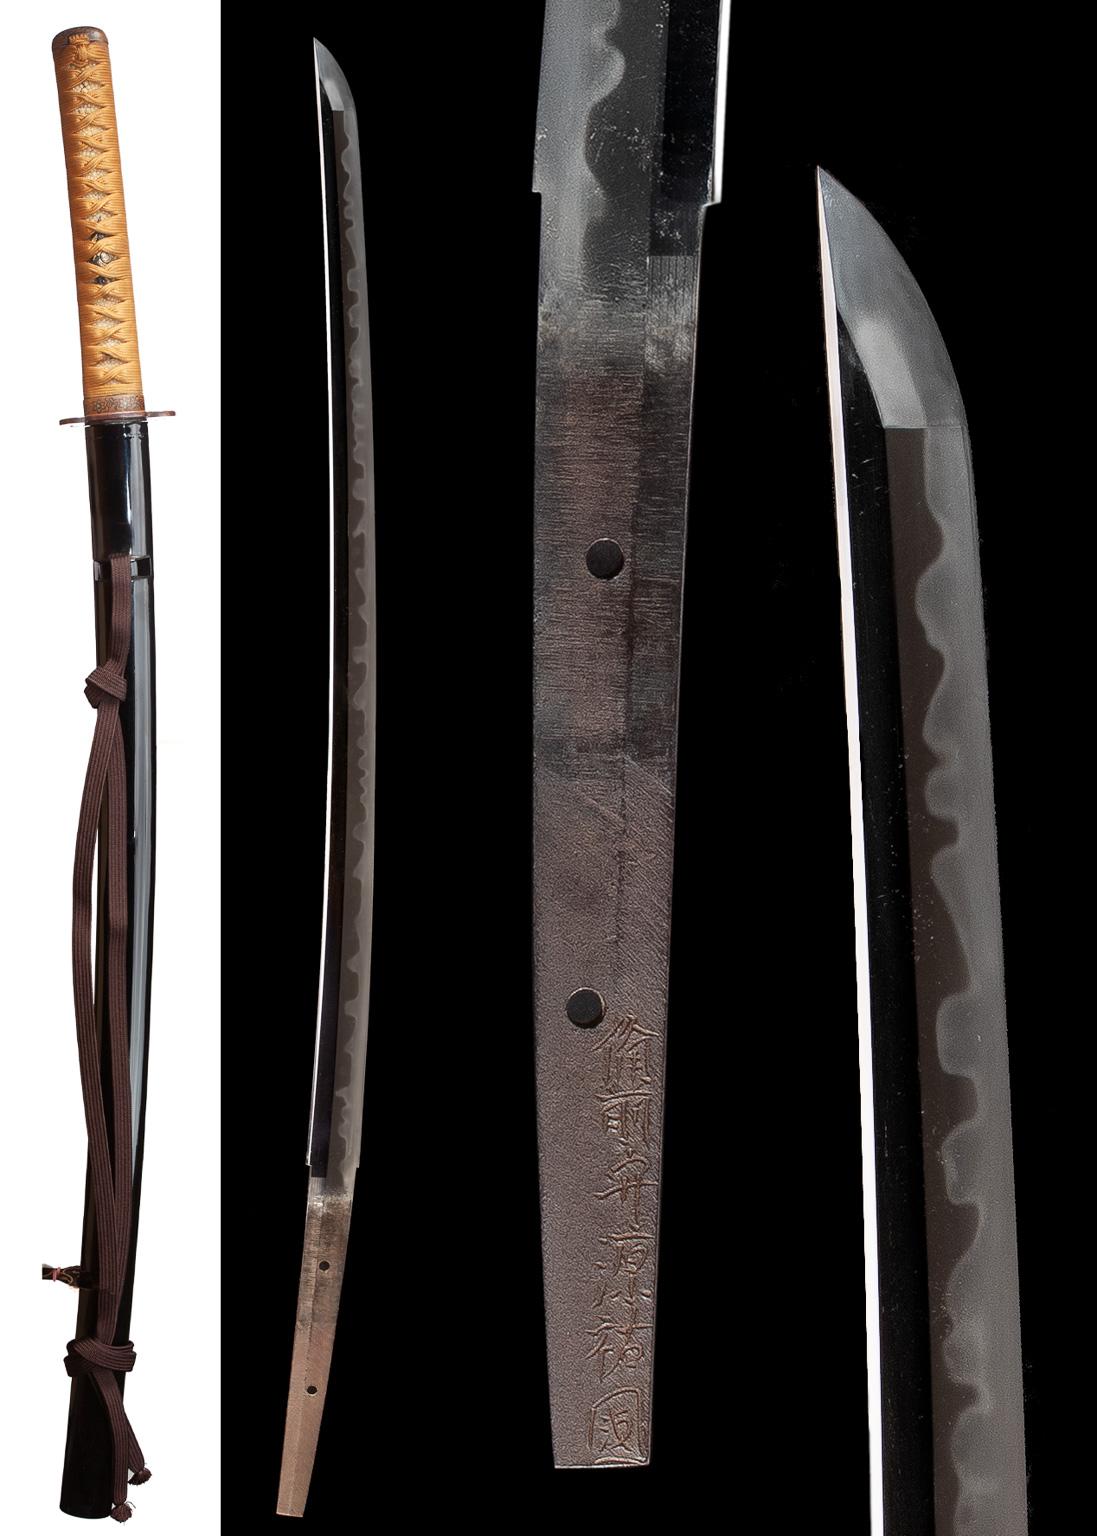 Ein Sukekuni Shinto Katana
Samurai-Schwert in koshirae
 
Datum: Frühe Edo-Periode:: um 1660. 
Zertifikat: NBTHK Tokubetsu Hozon Token
Nagasa [Länge]: 69.4 cm
Motohaba 2.4cm
Sori 1.6 cm
Sugata [Konfiguration]: Shinogi-zukuri:: tori-zori:: iori-mune::